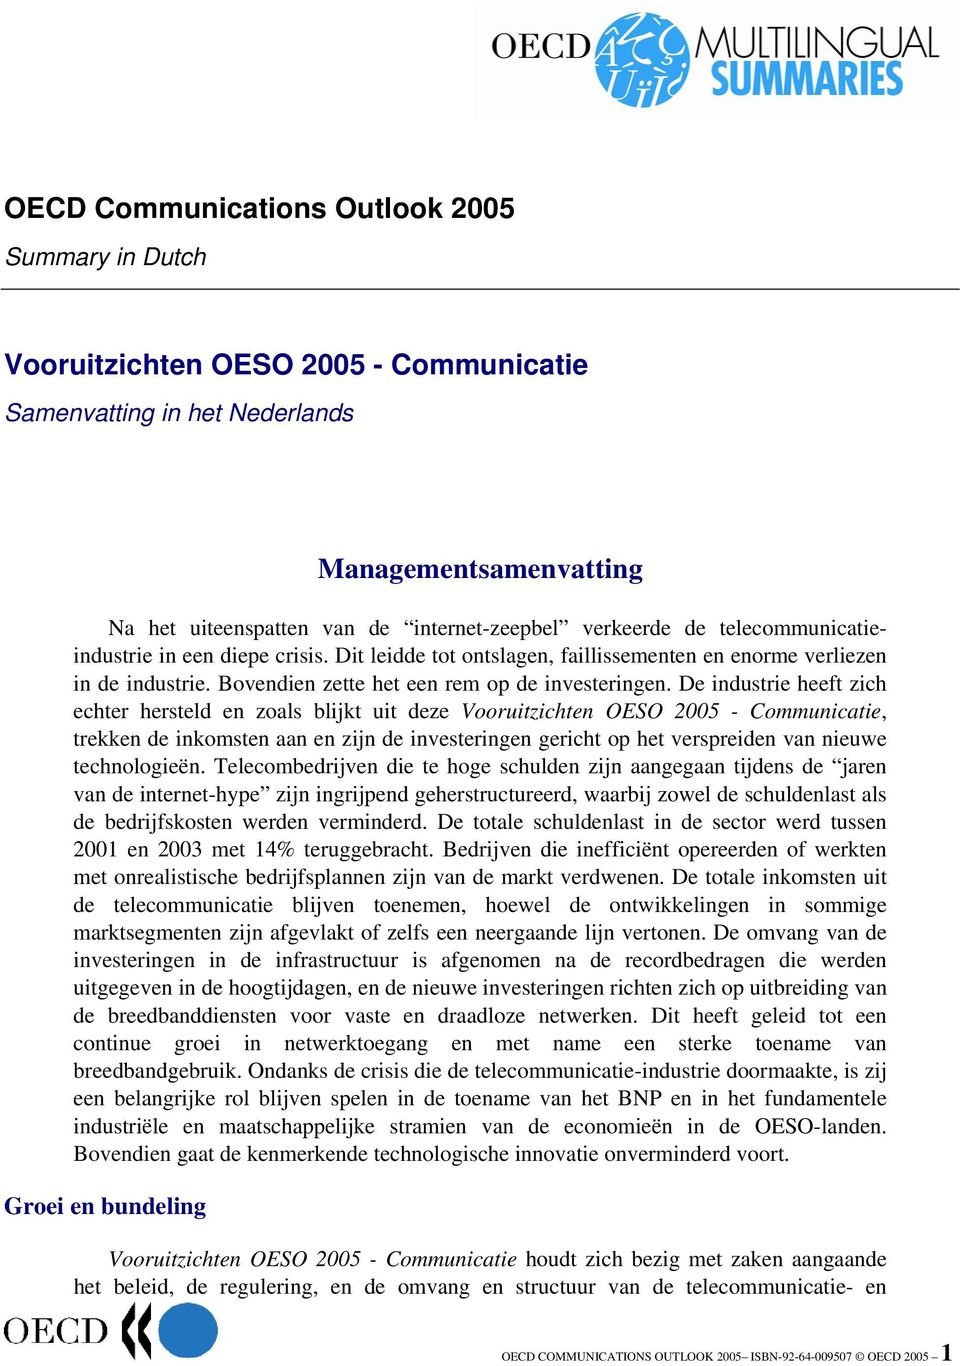 De industrie heeft zich echter hersteld en zoals blijkt uit deze Vooruitzichten OESO 2005 - Communicatie, trekken de inkomsten aan en zijn de investeringen gericht op het verspreiden van nieuwe